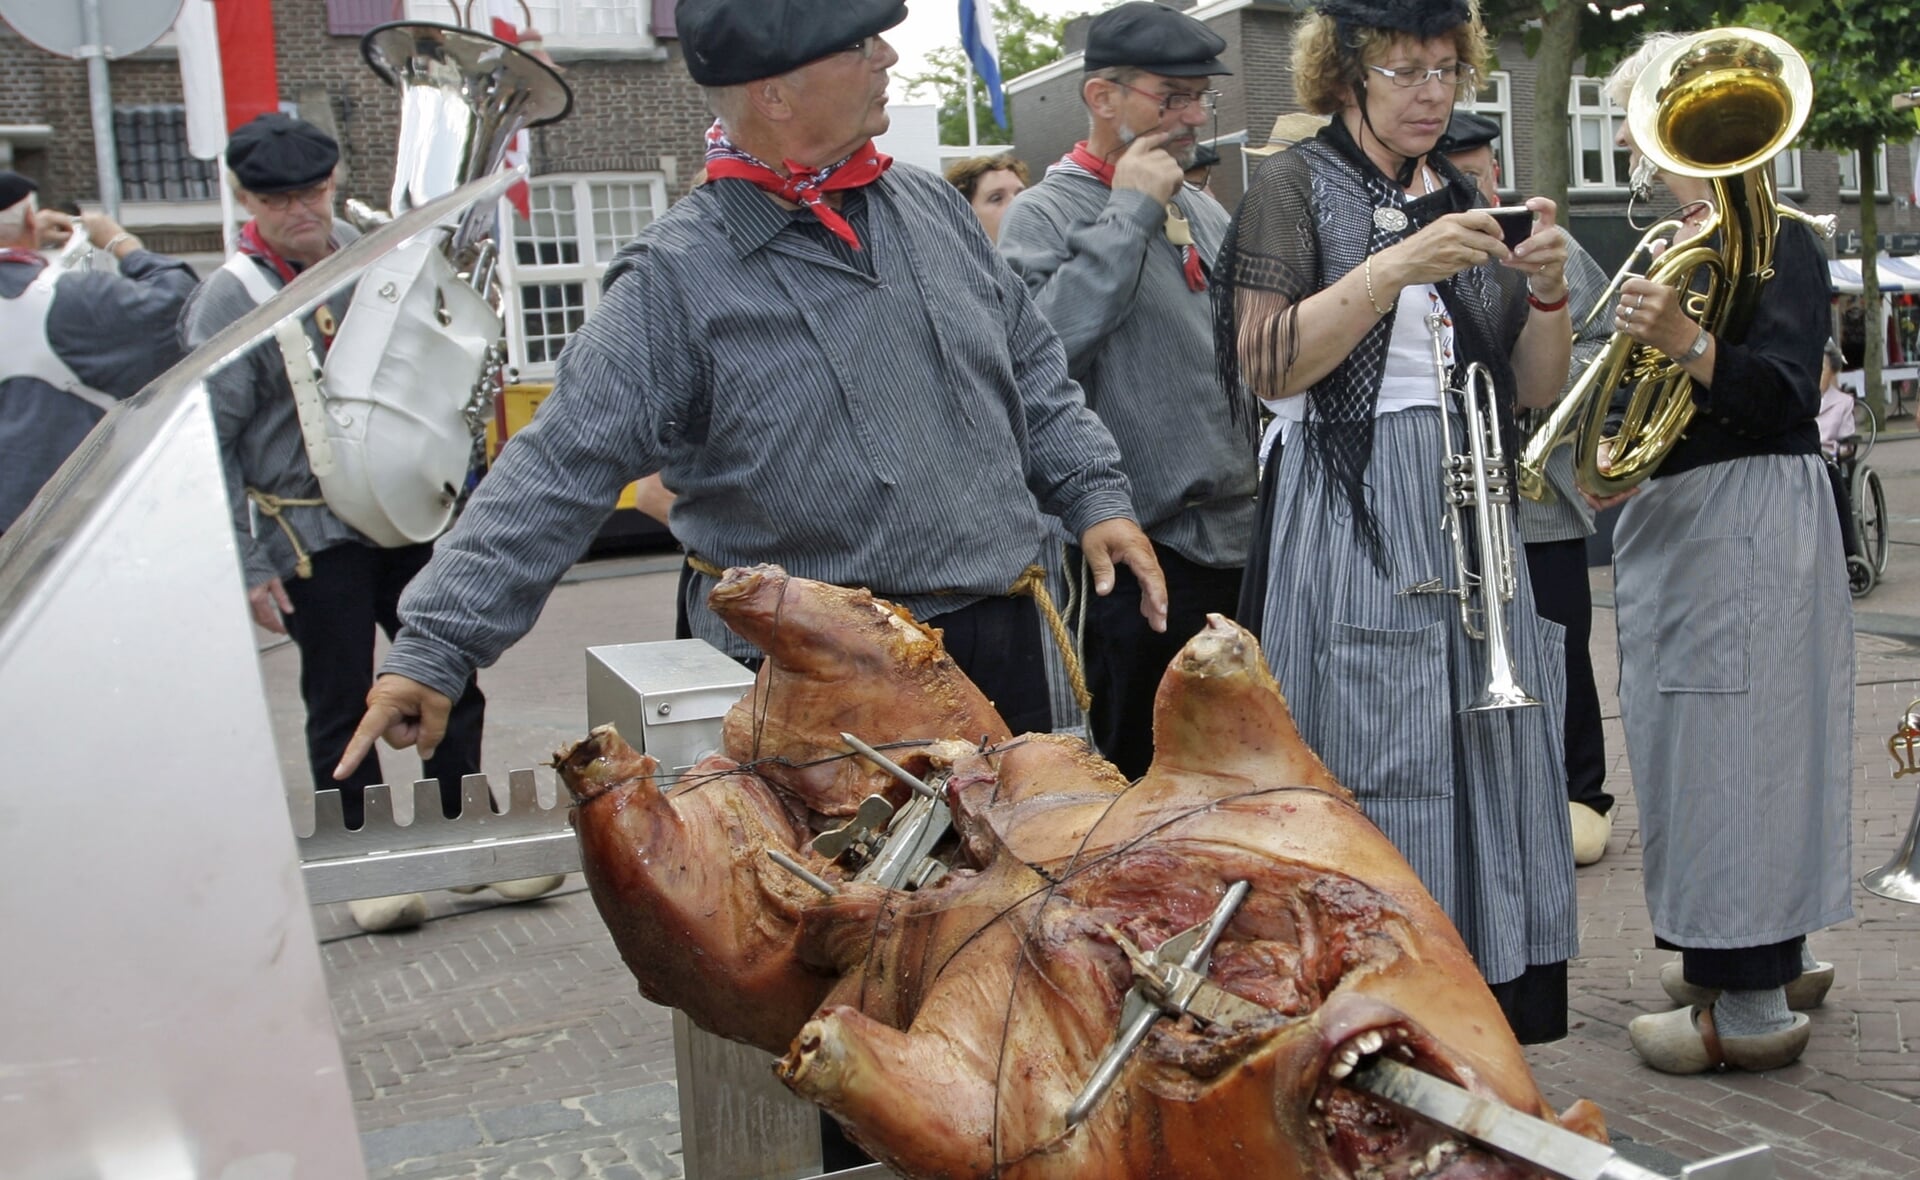 Saubrennen, het aan een spit roosteren van een varken, is iets typisch Wittlichs. In 2009 werd het op de Boxtelse Markt gedemonstreerd bij de viering van vijftig jaar jumelage.